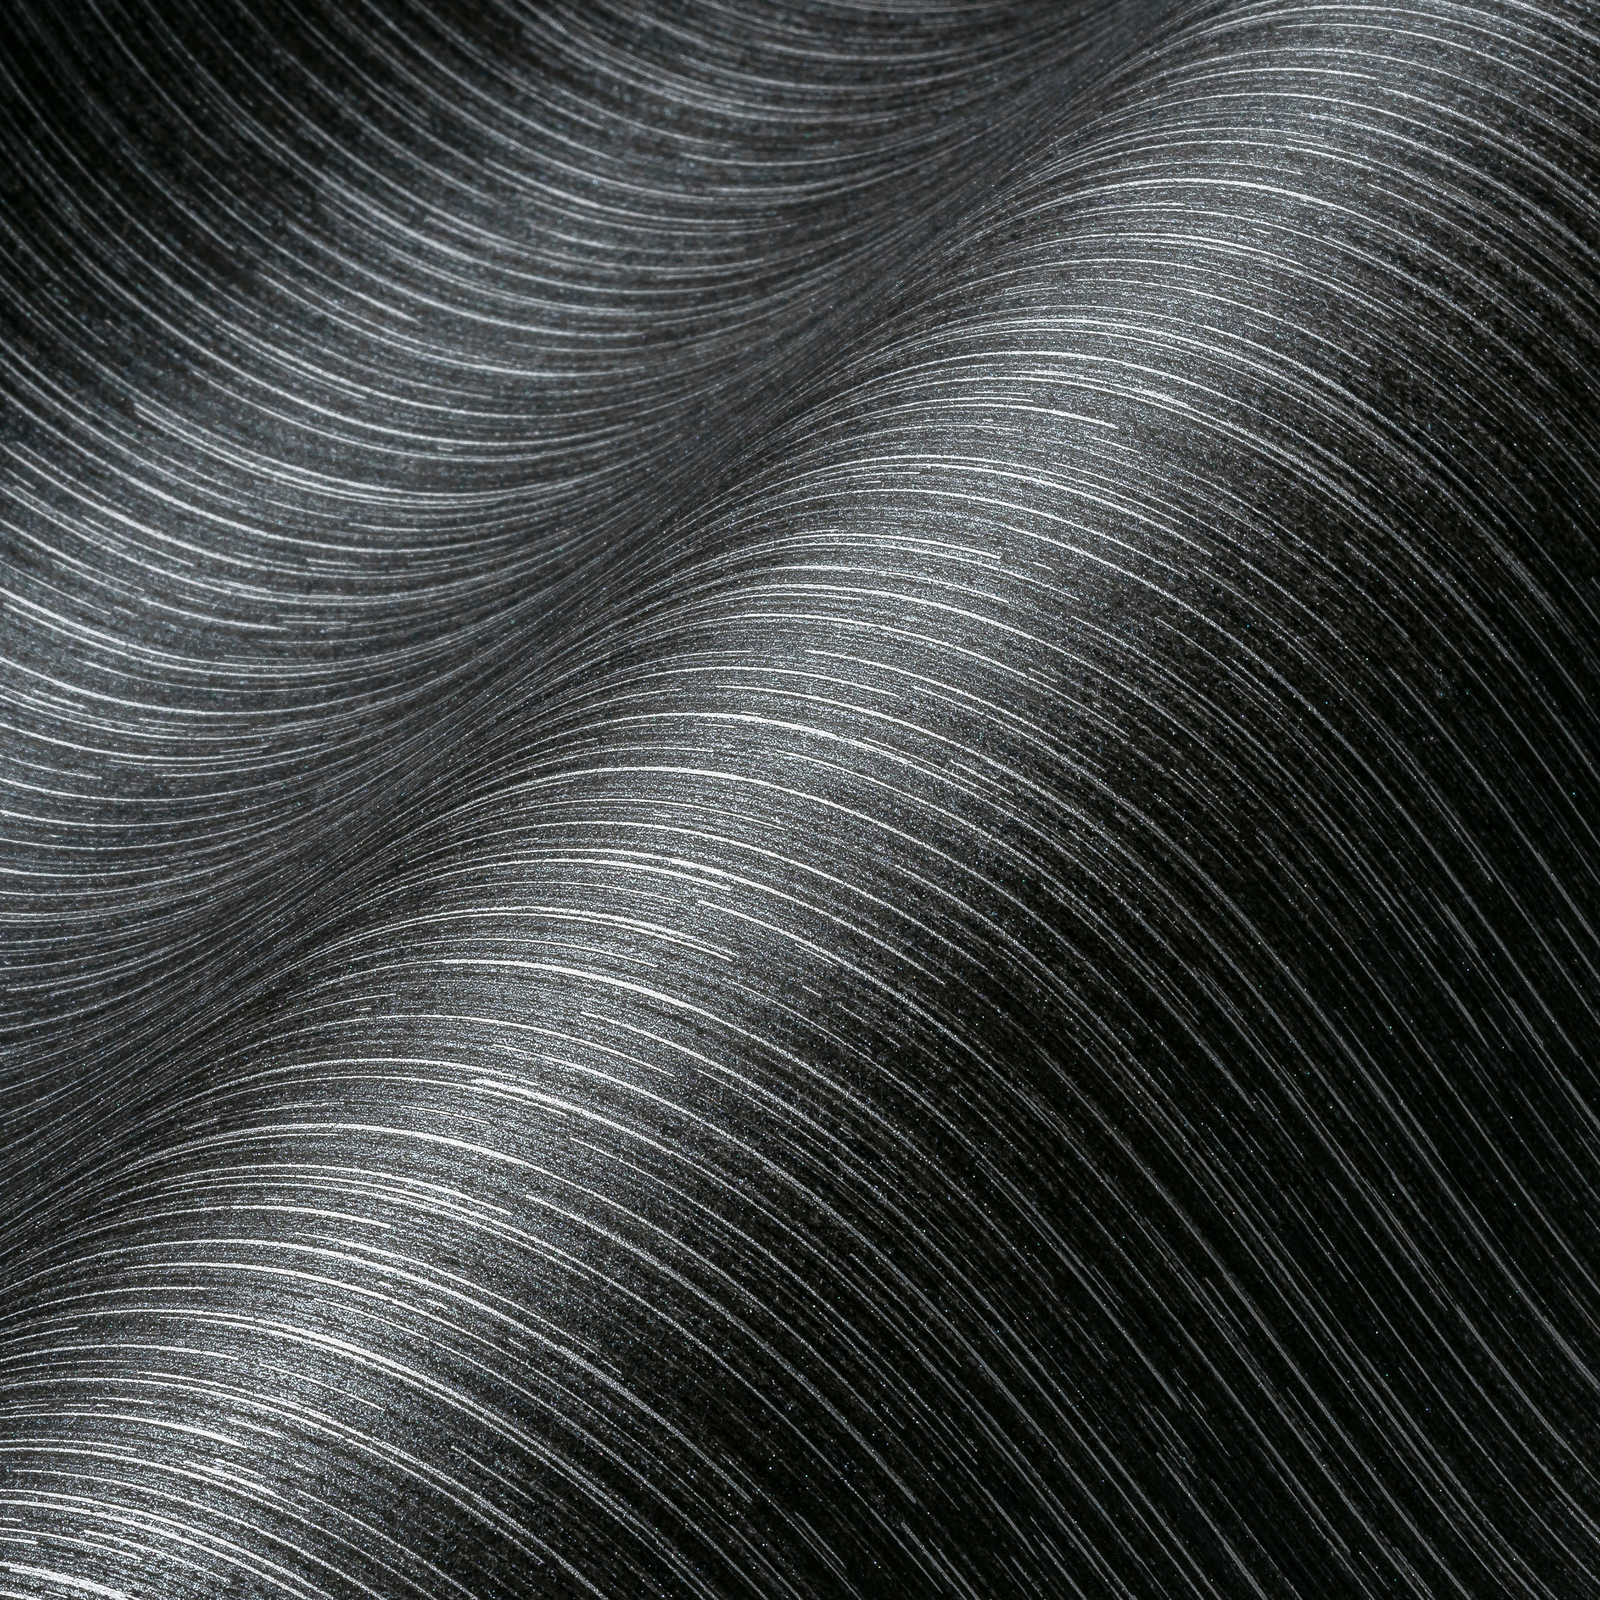             Papier peint anthracite avec accents argentés & design de lignes - noir, métallique
        